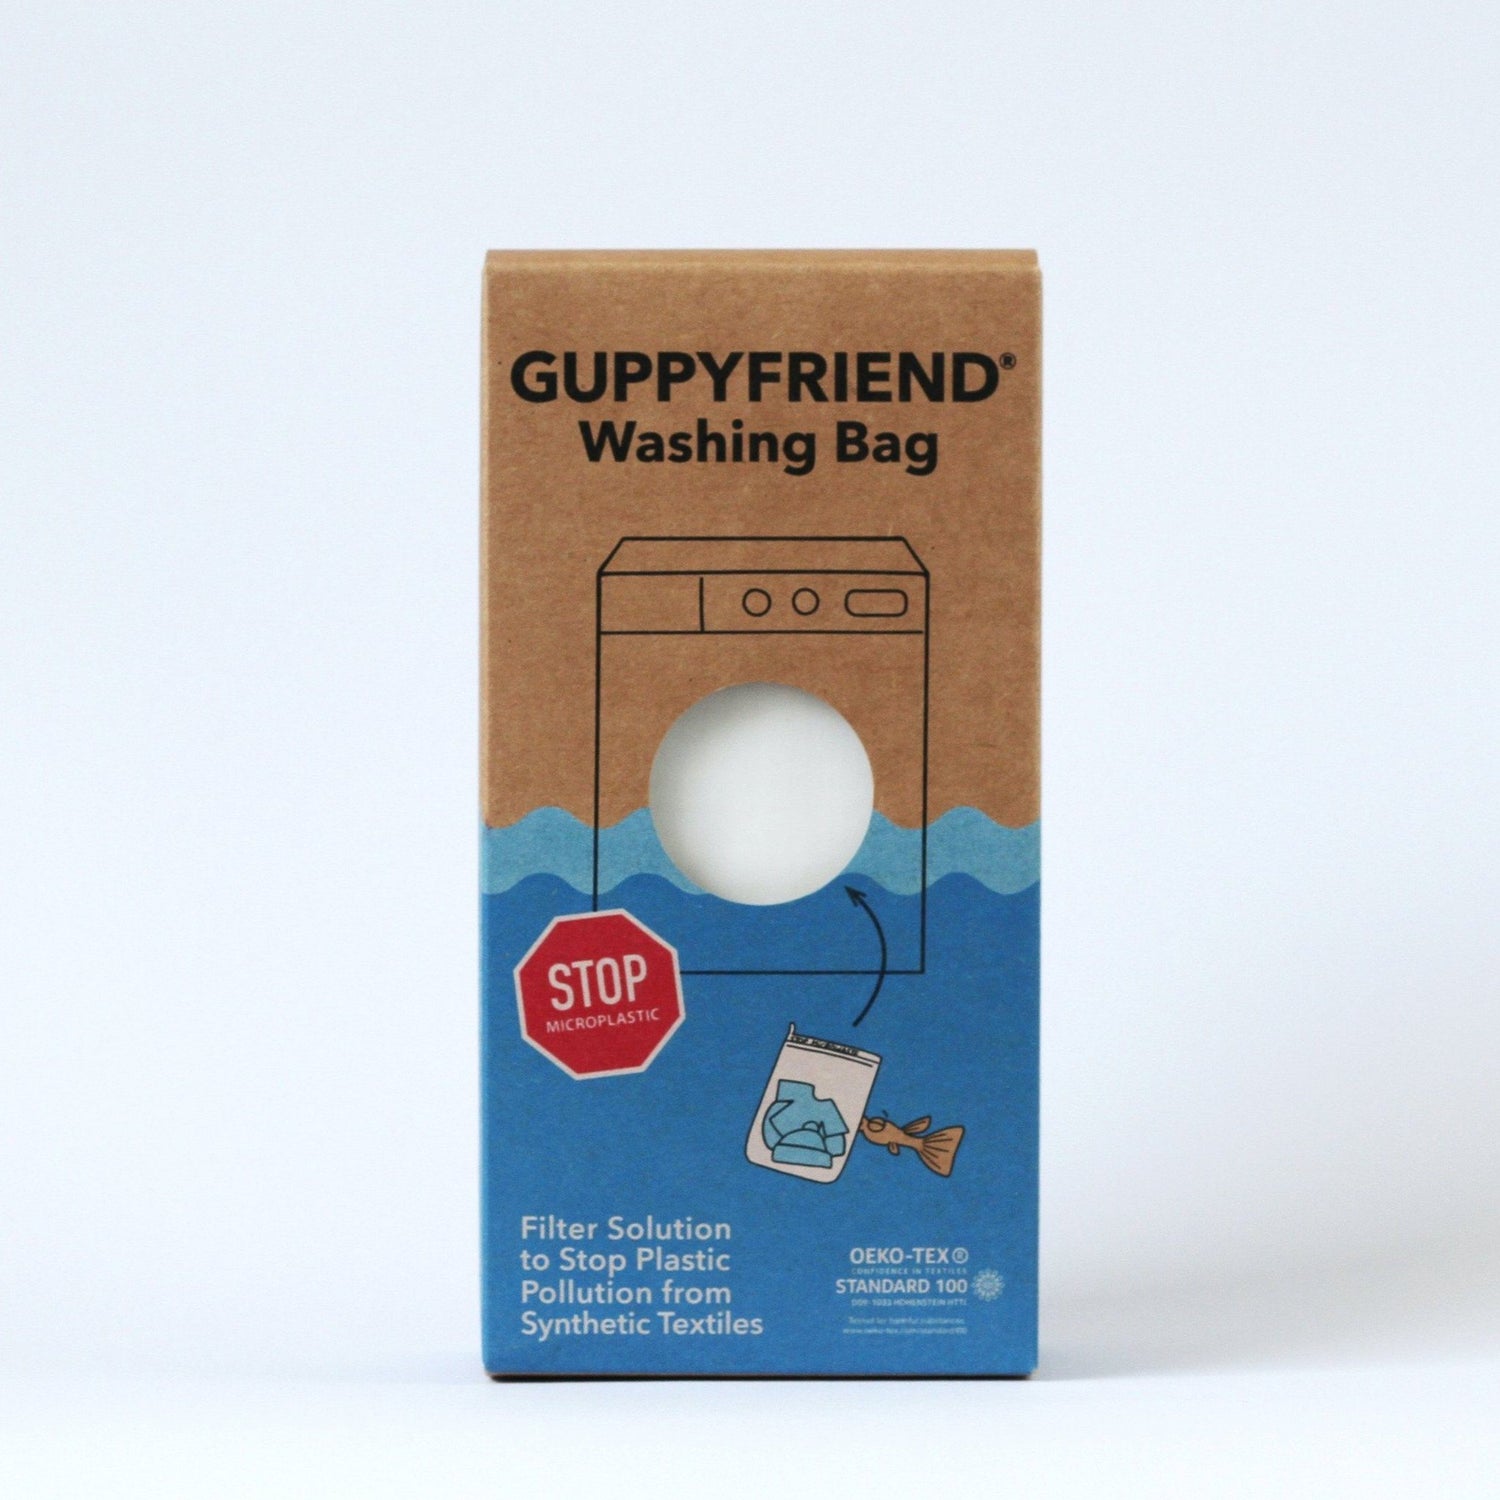 Guppyfriend - Guppyfriend Washing Bag - Catch the microplastics during laundry - Weekendbee - sustainable sportswear